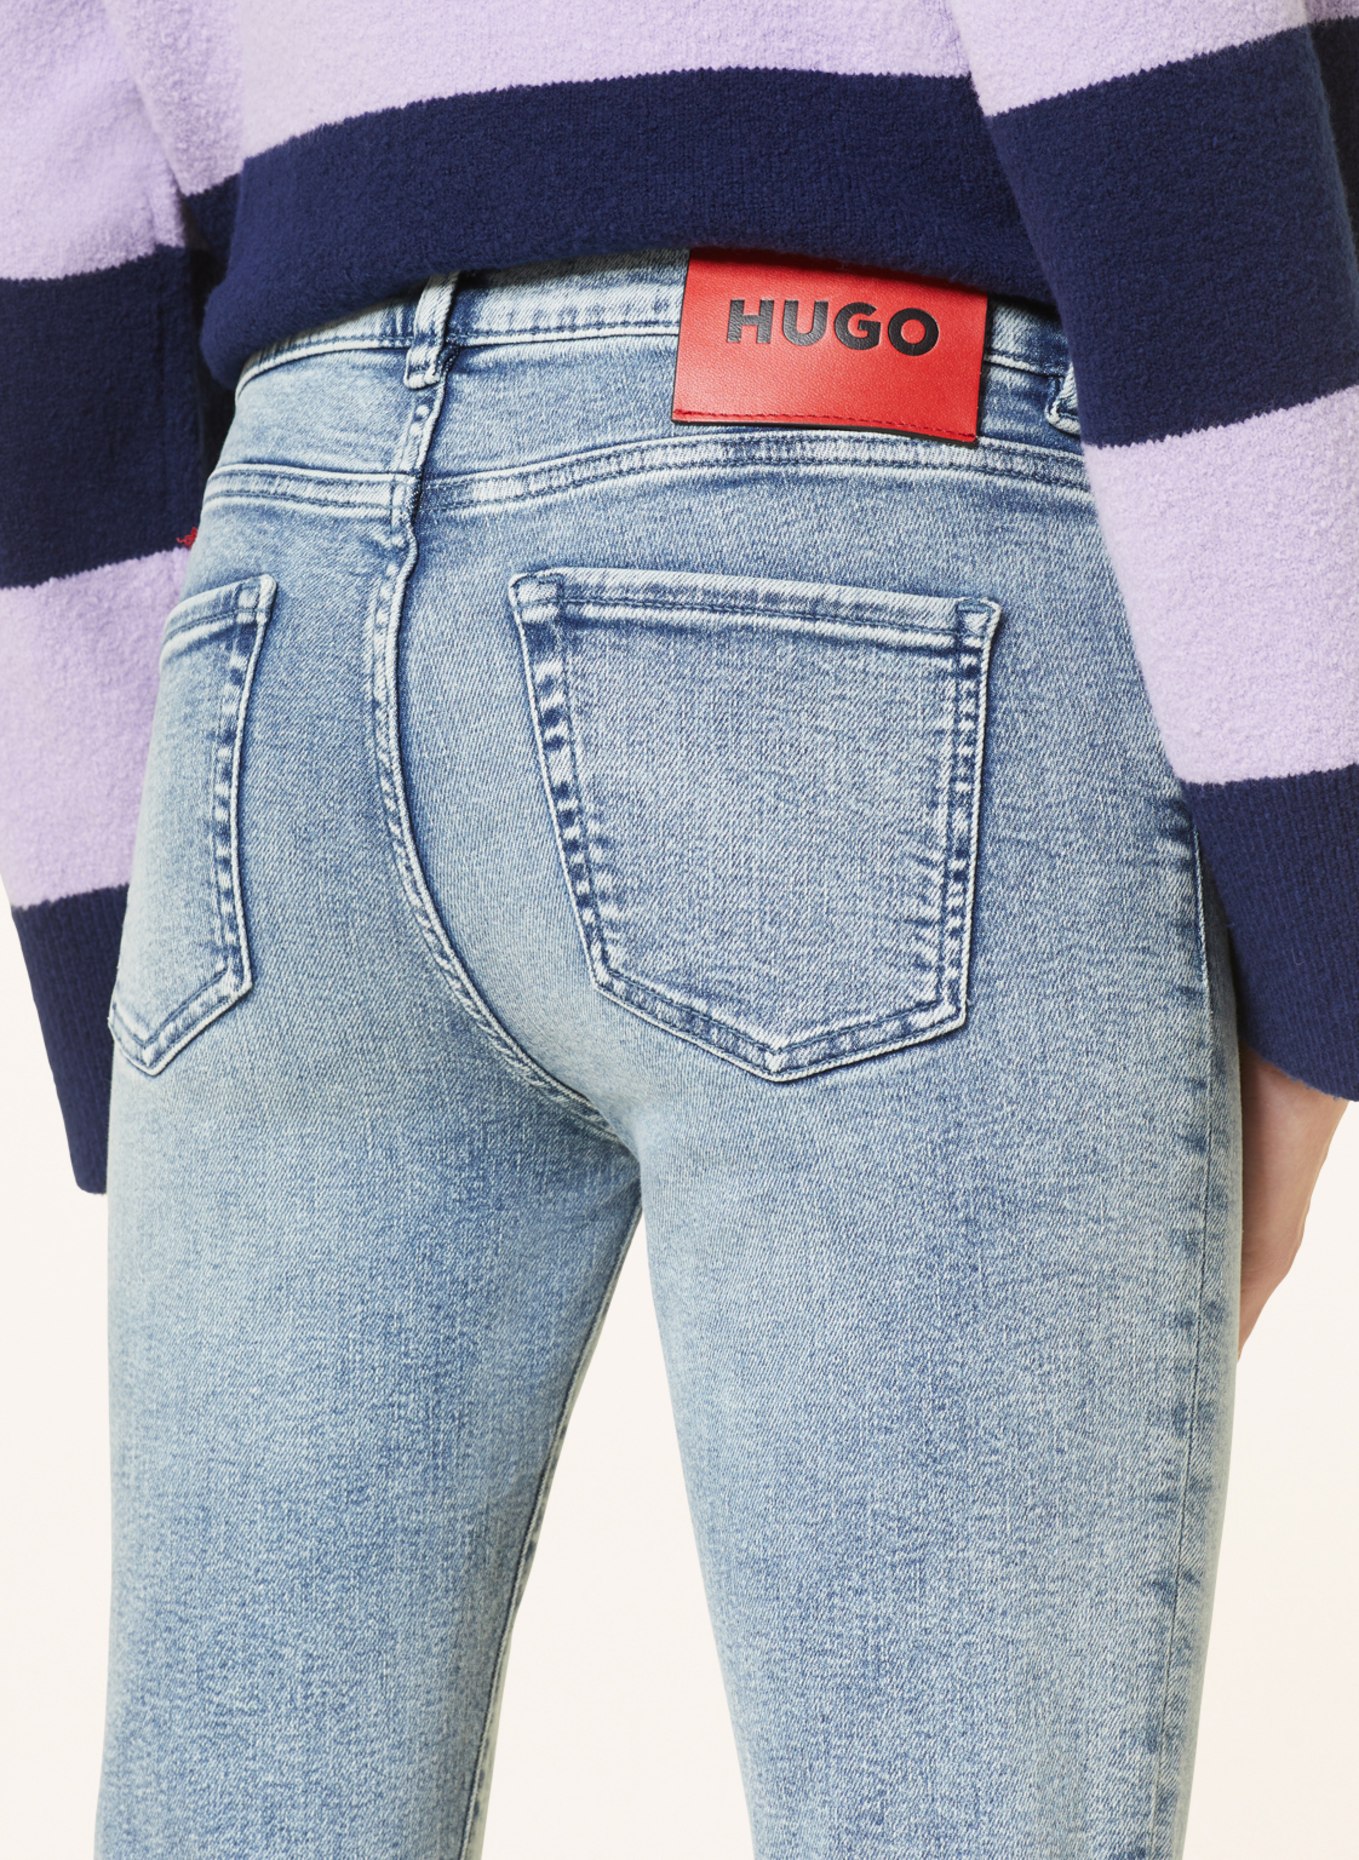 HUGO Skinny jeans, Color: 434 BRIGHT BLUE (Image 5)